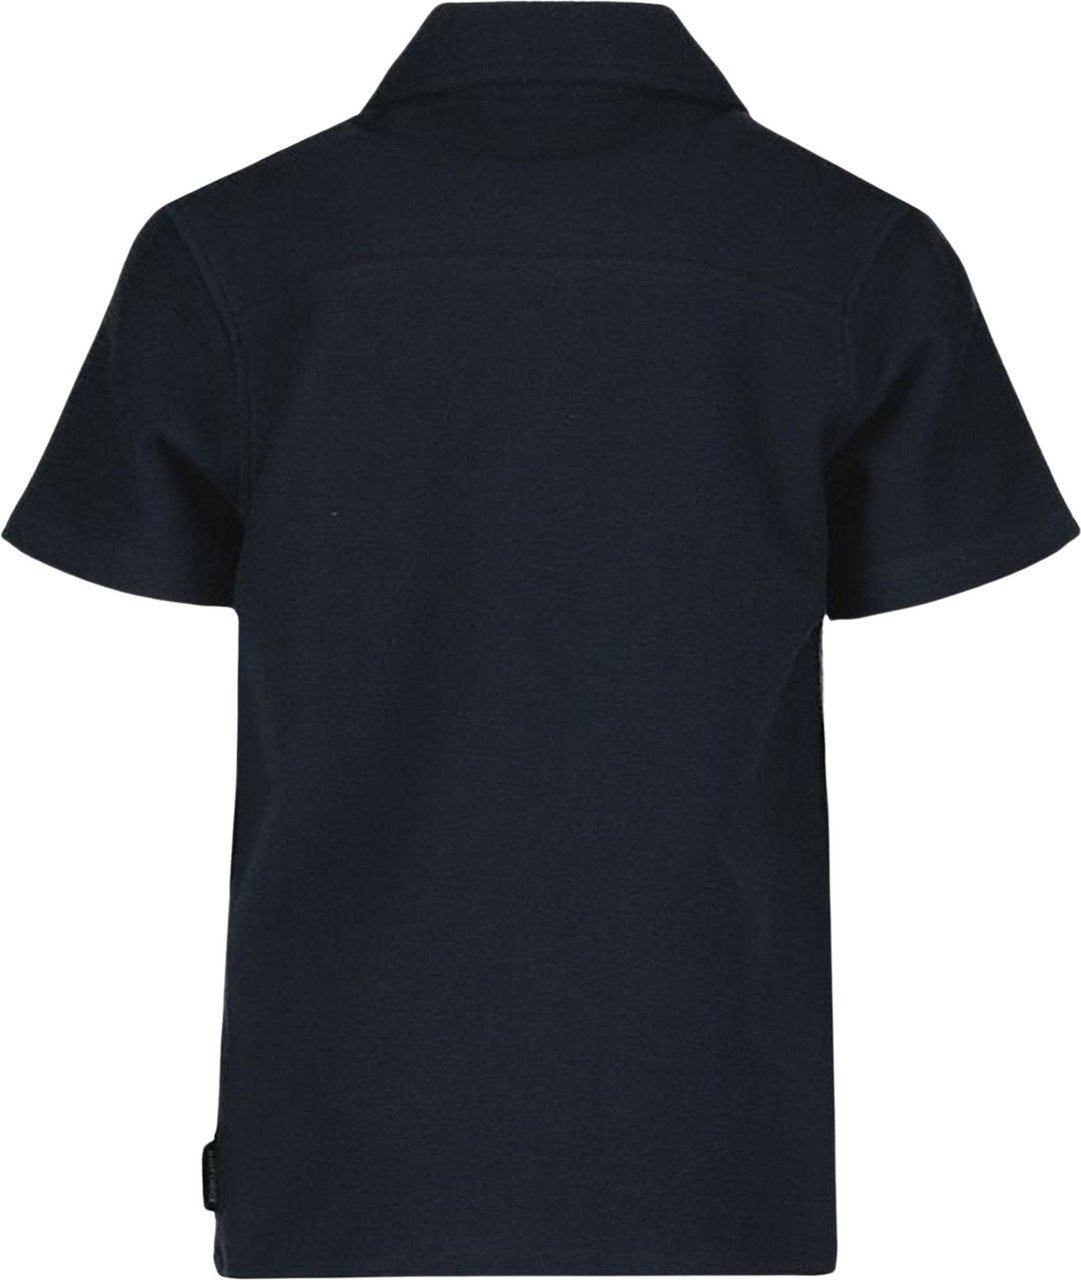 Airforce Woven Short Sleeve T-Shirt Blauw